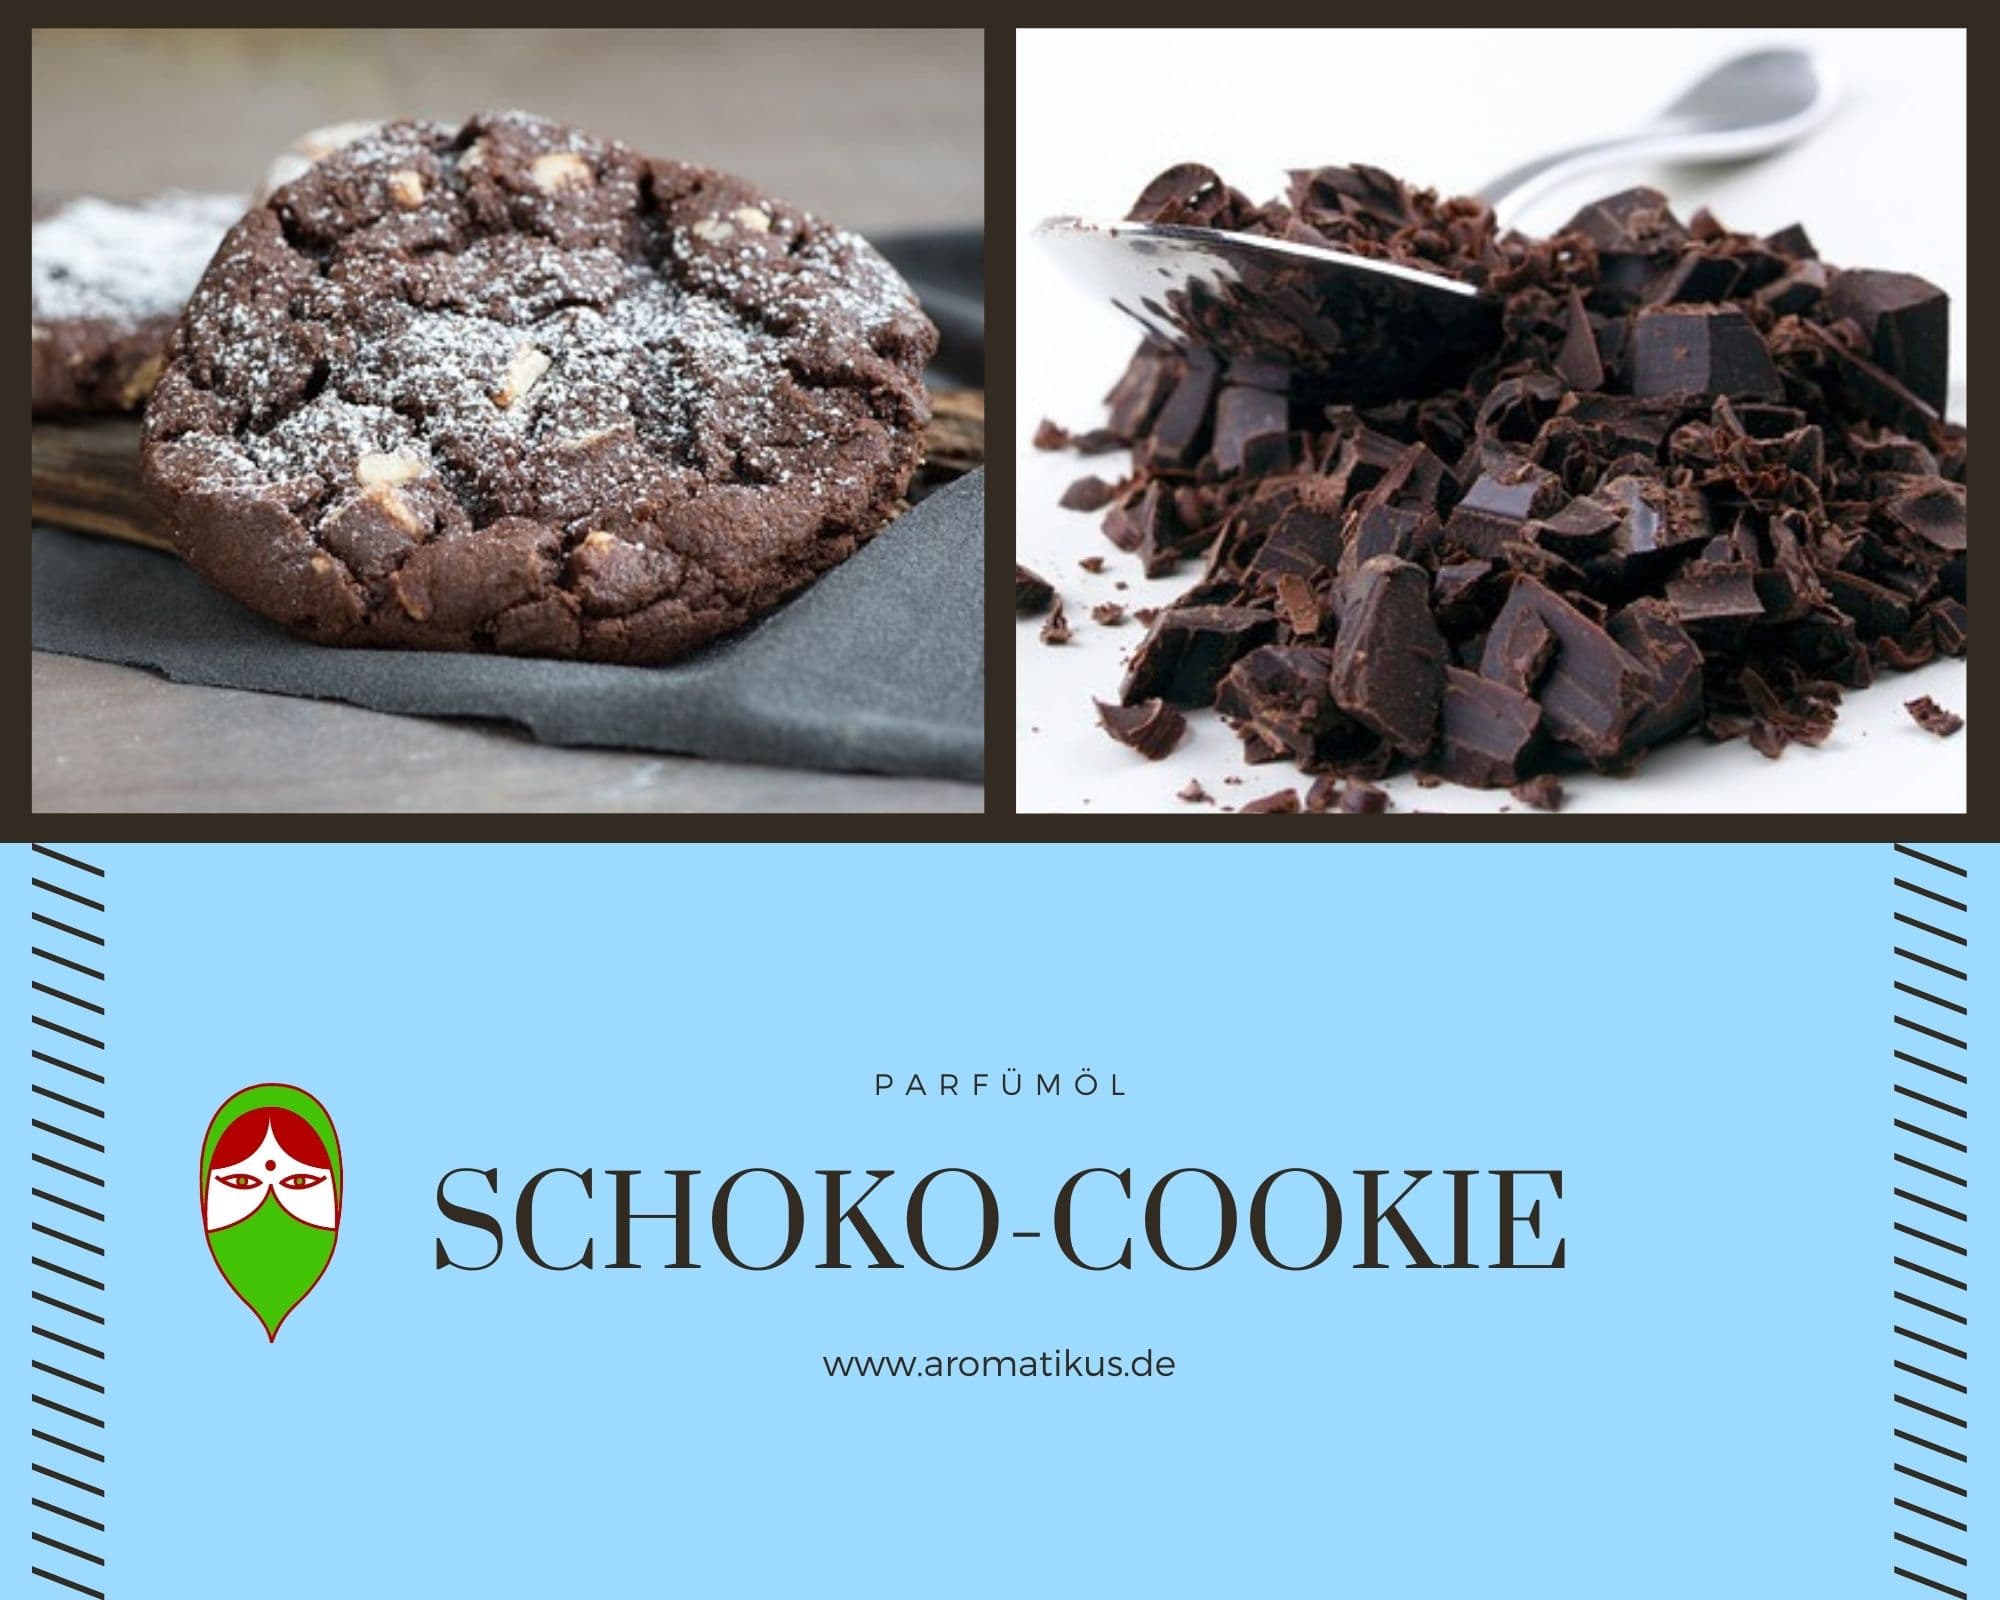 Ätherisches Duftöl Schoko-Cookie als Parfümöl von Aromatikus